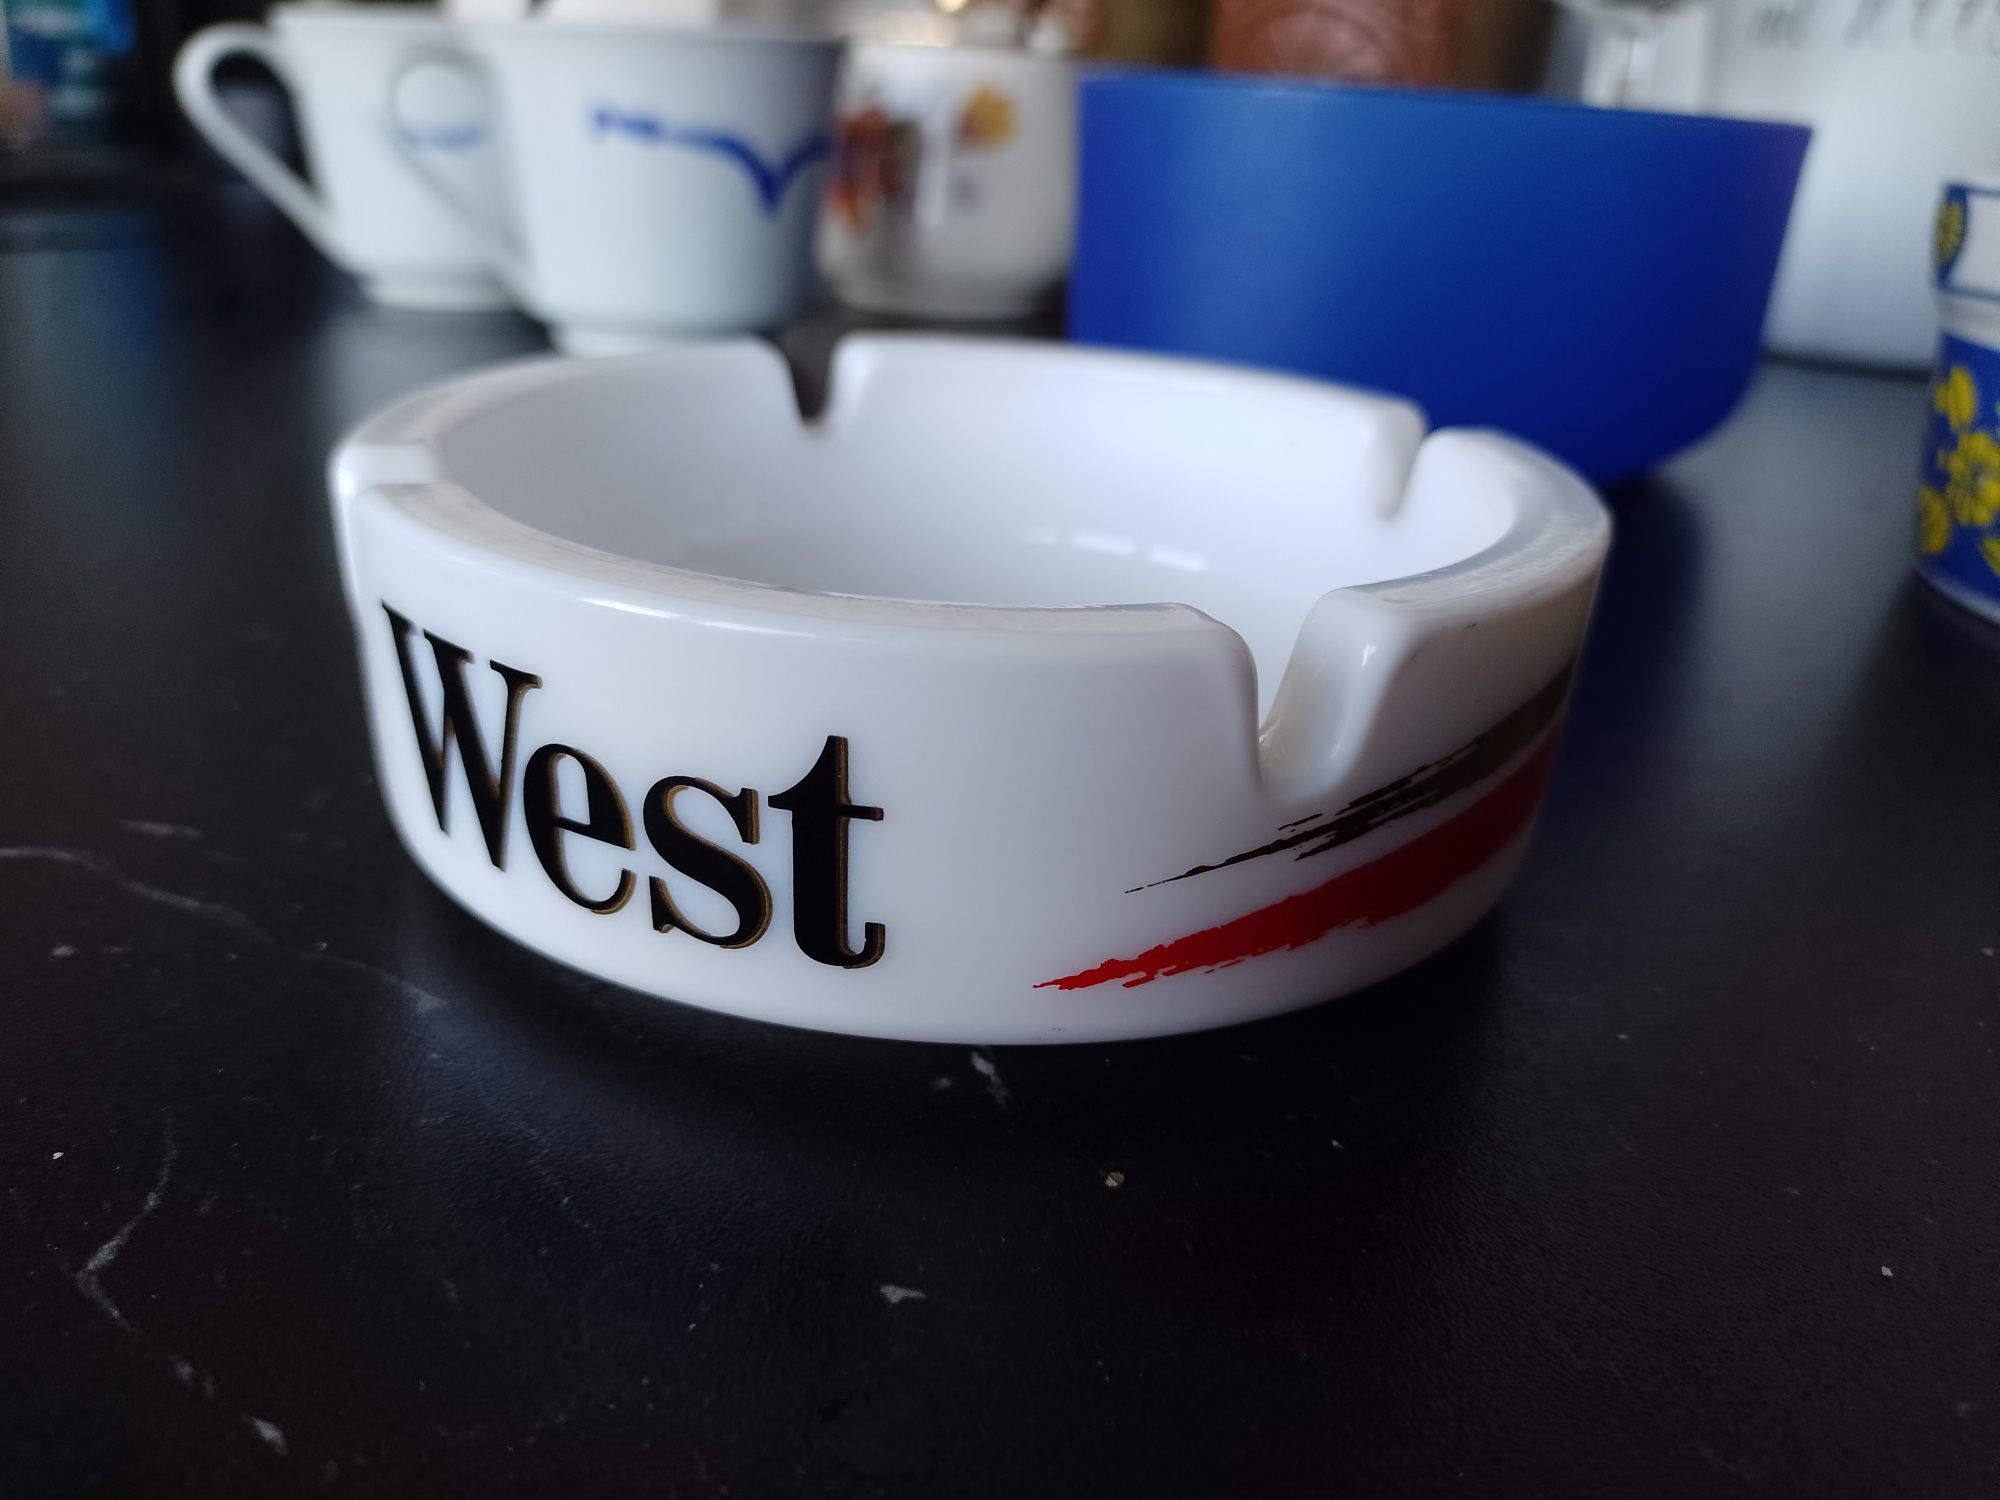 Vintage popielniczka popielnica West logo